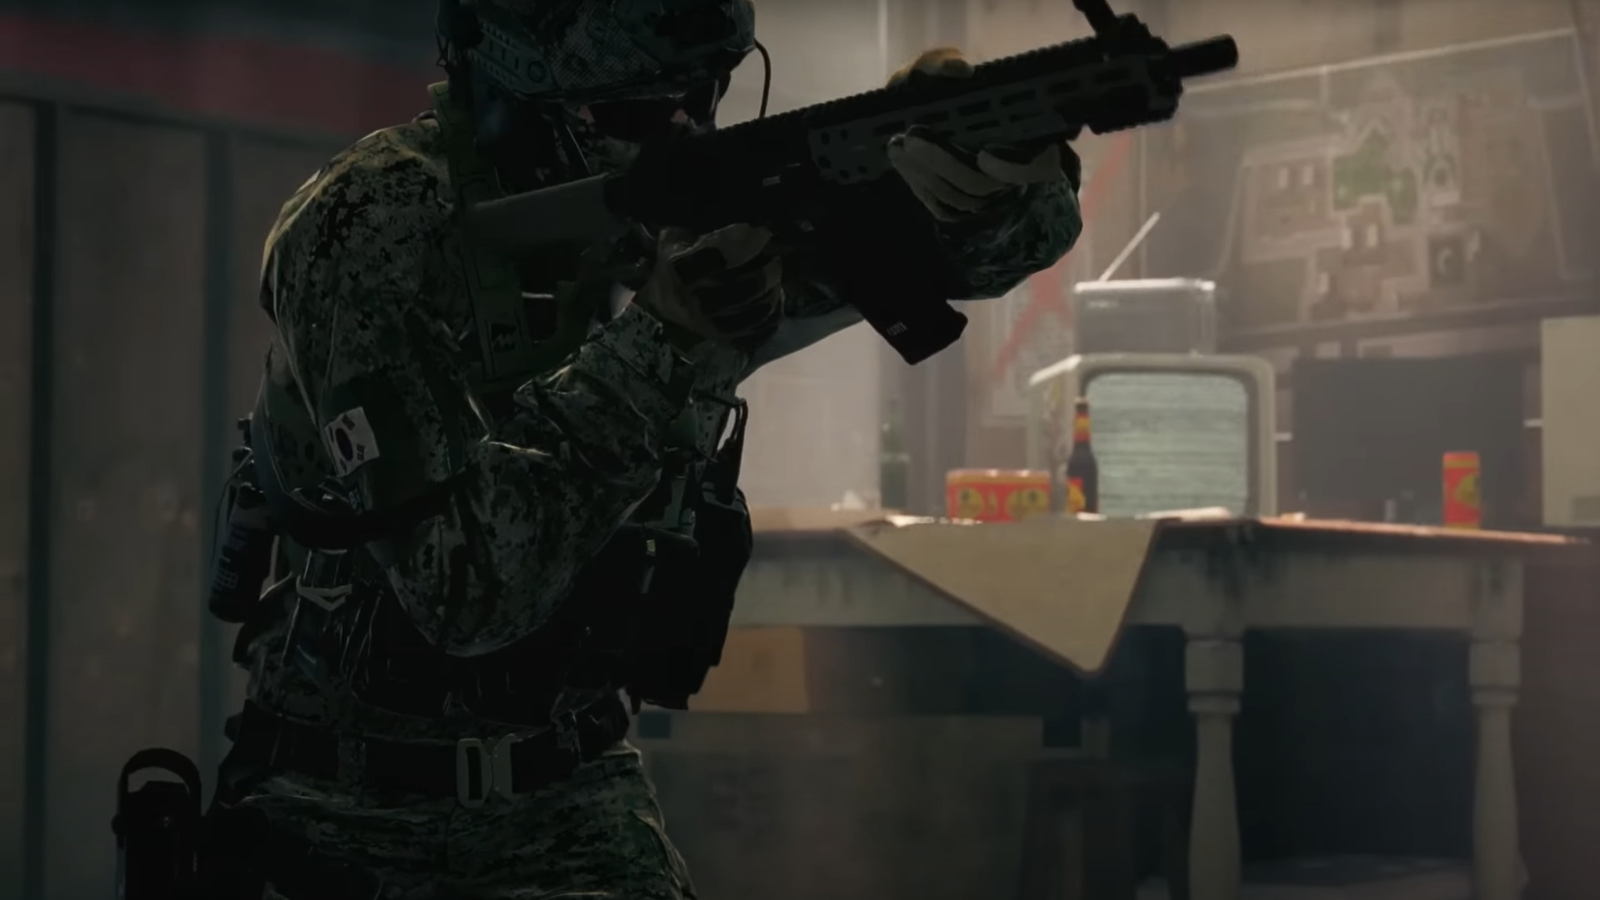 Call of Duty 2023 Is A Modern Warfare Spin-Off, Release Date Leaks